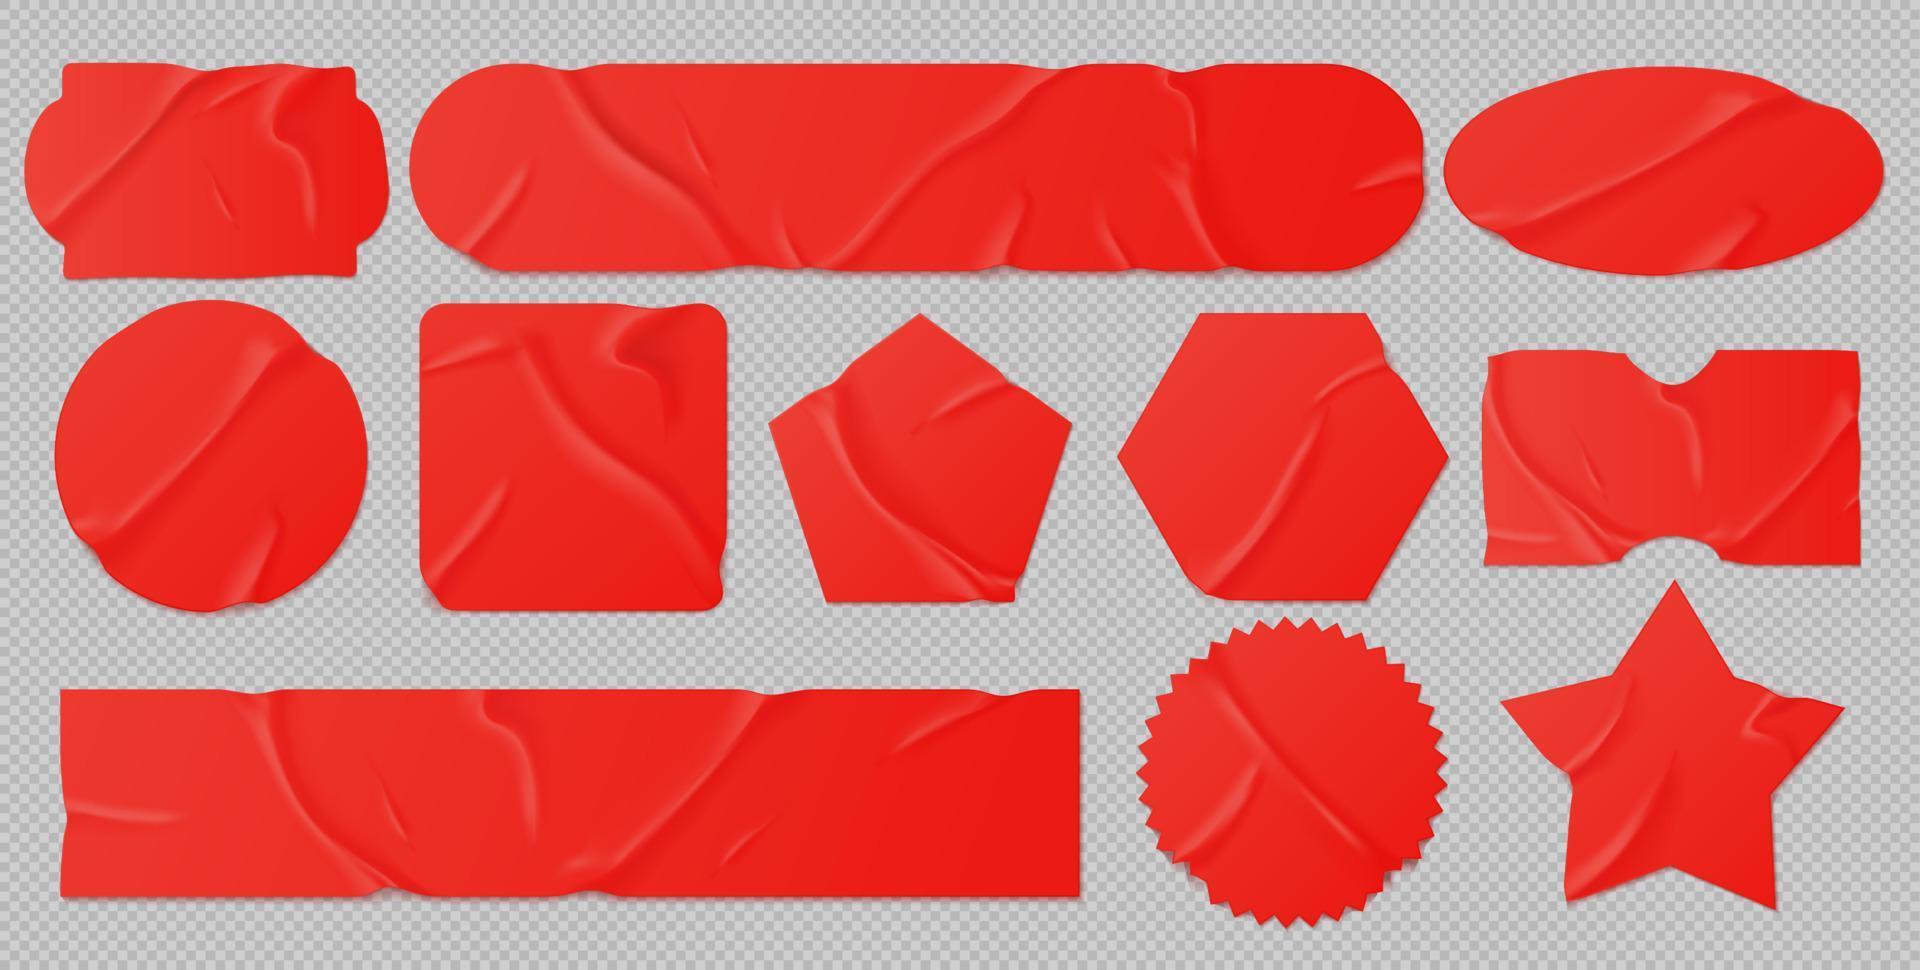 rot geklebte aufkleber, zerknittertes papierfleckenmodell vektor